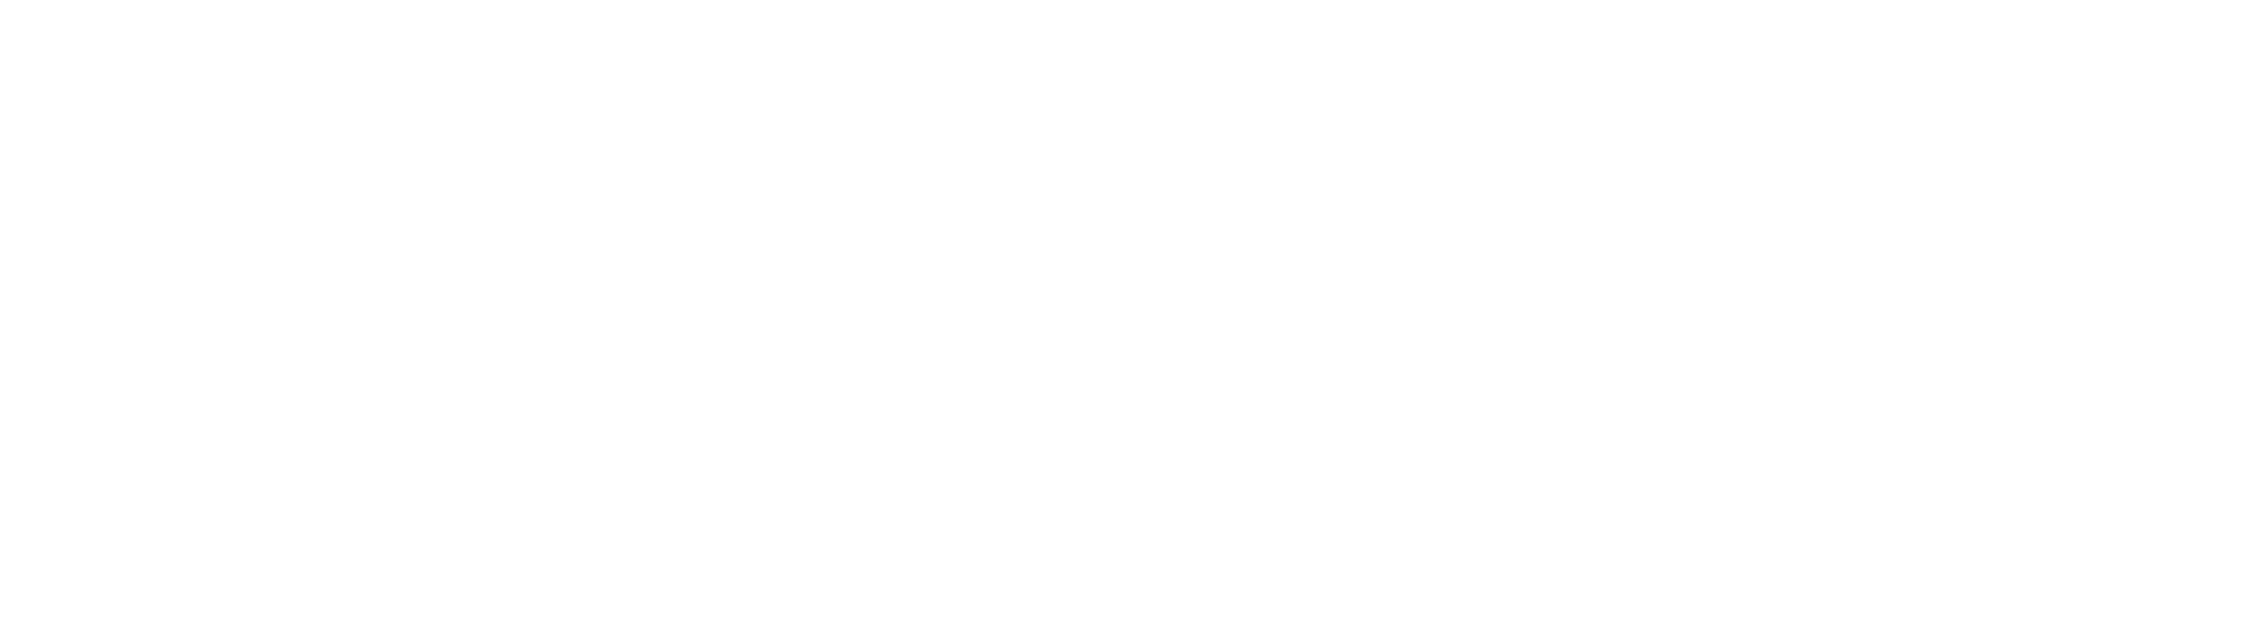 summit-logo-no-date